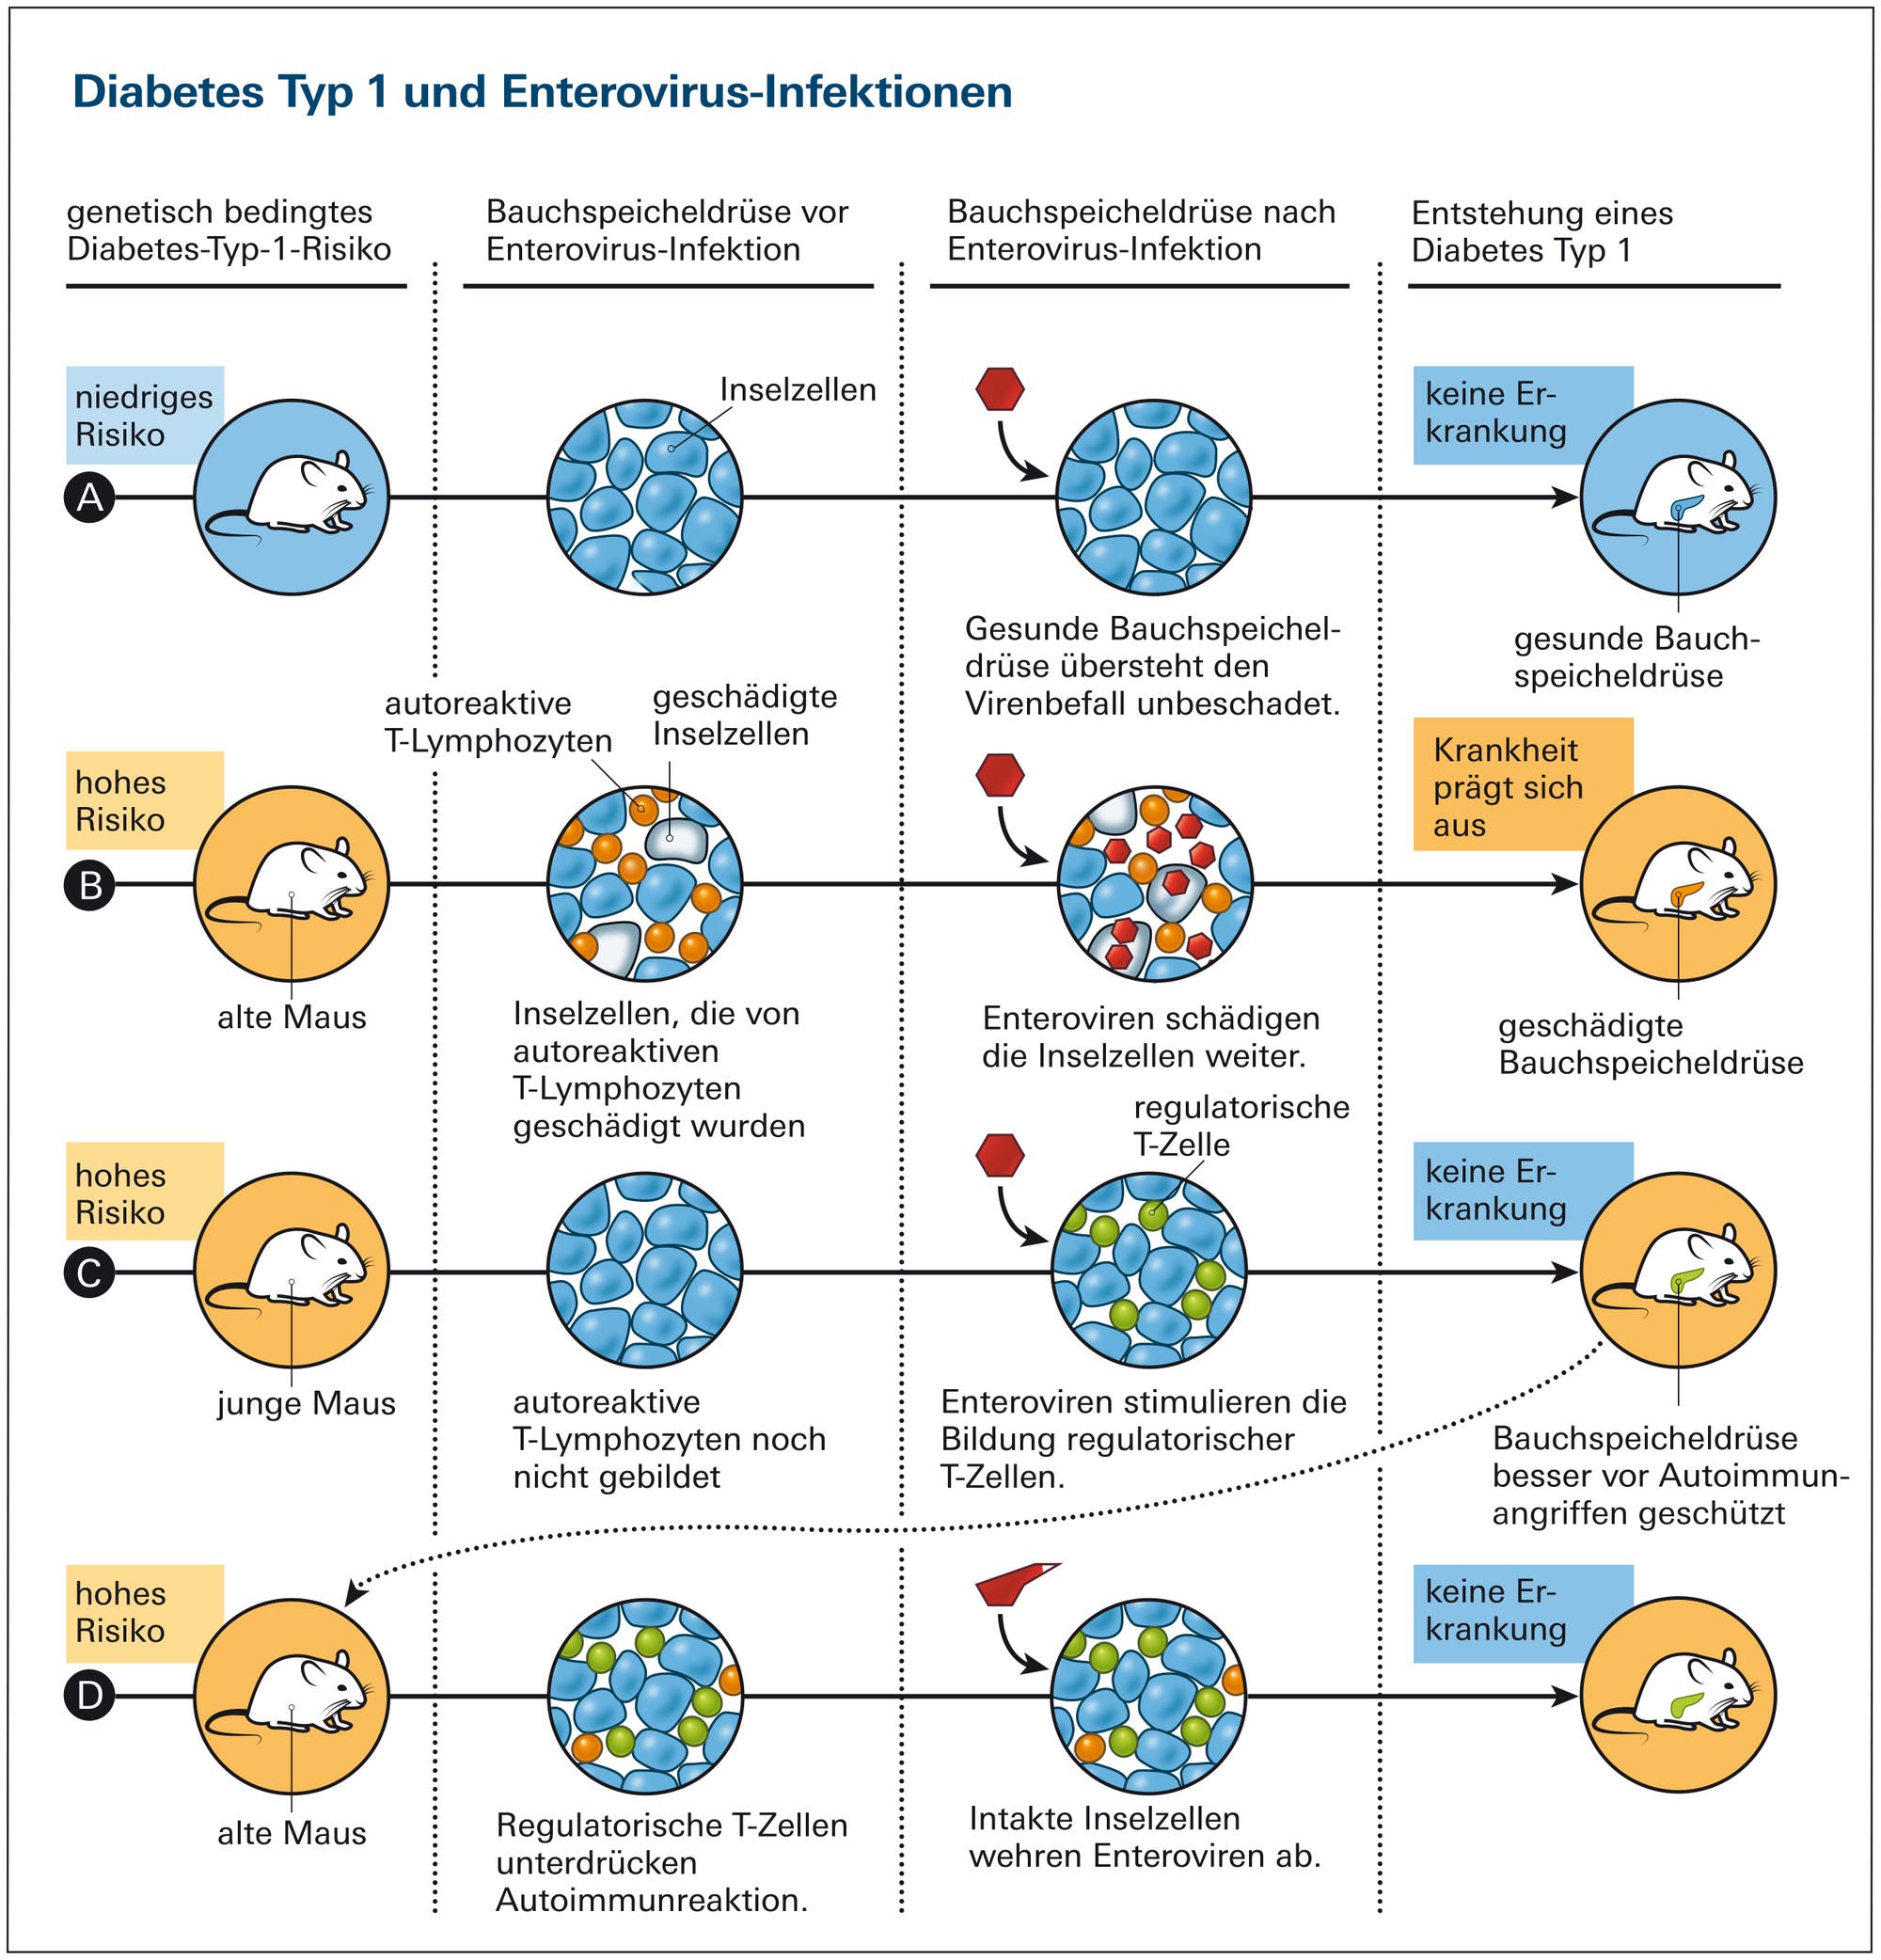 Diabetes Typ 1 und Enterovirus-Infektionen